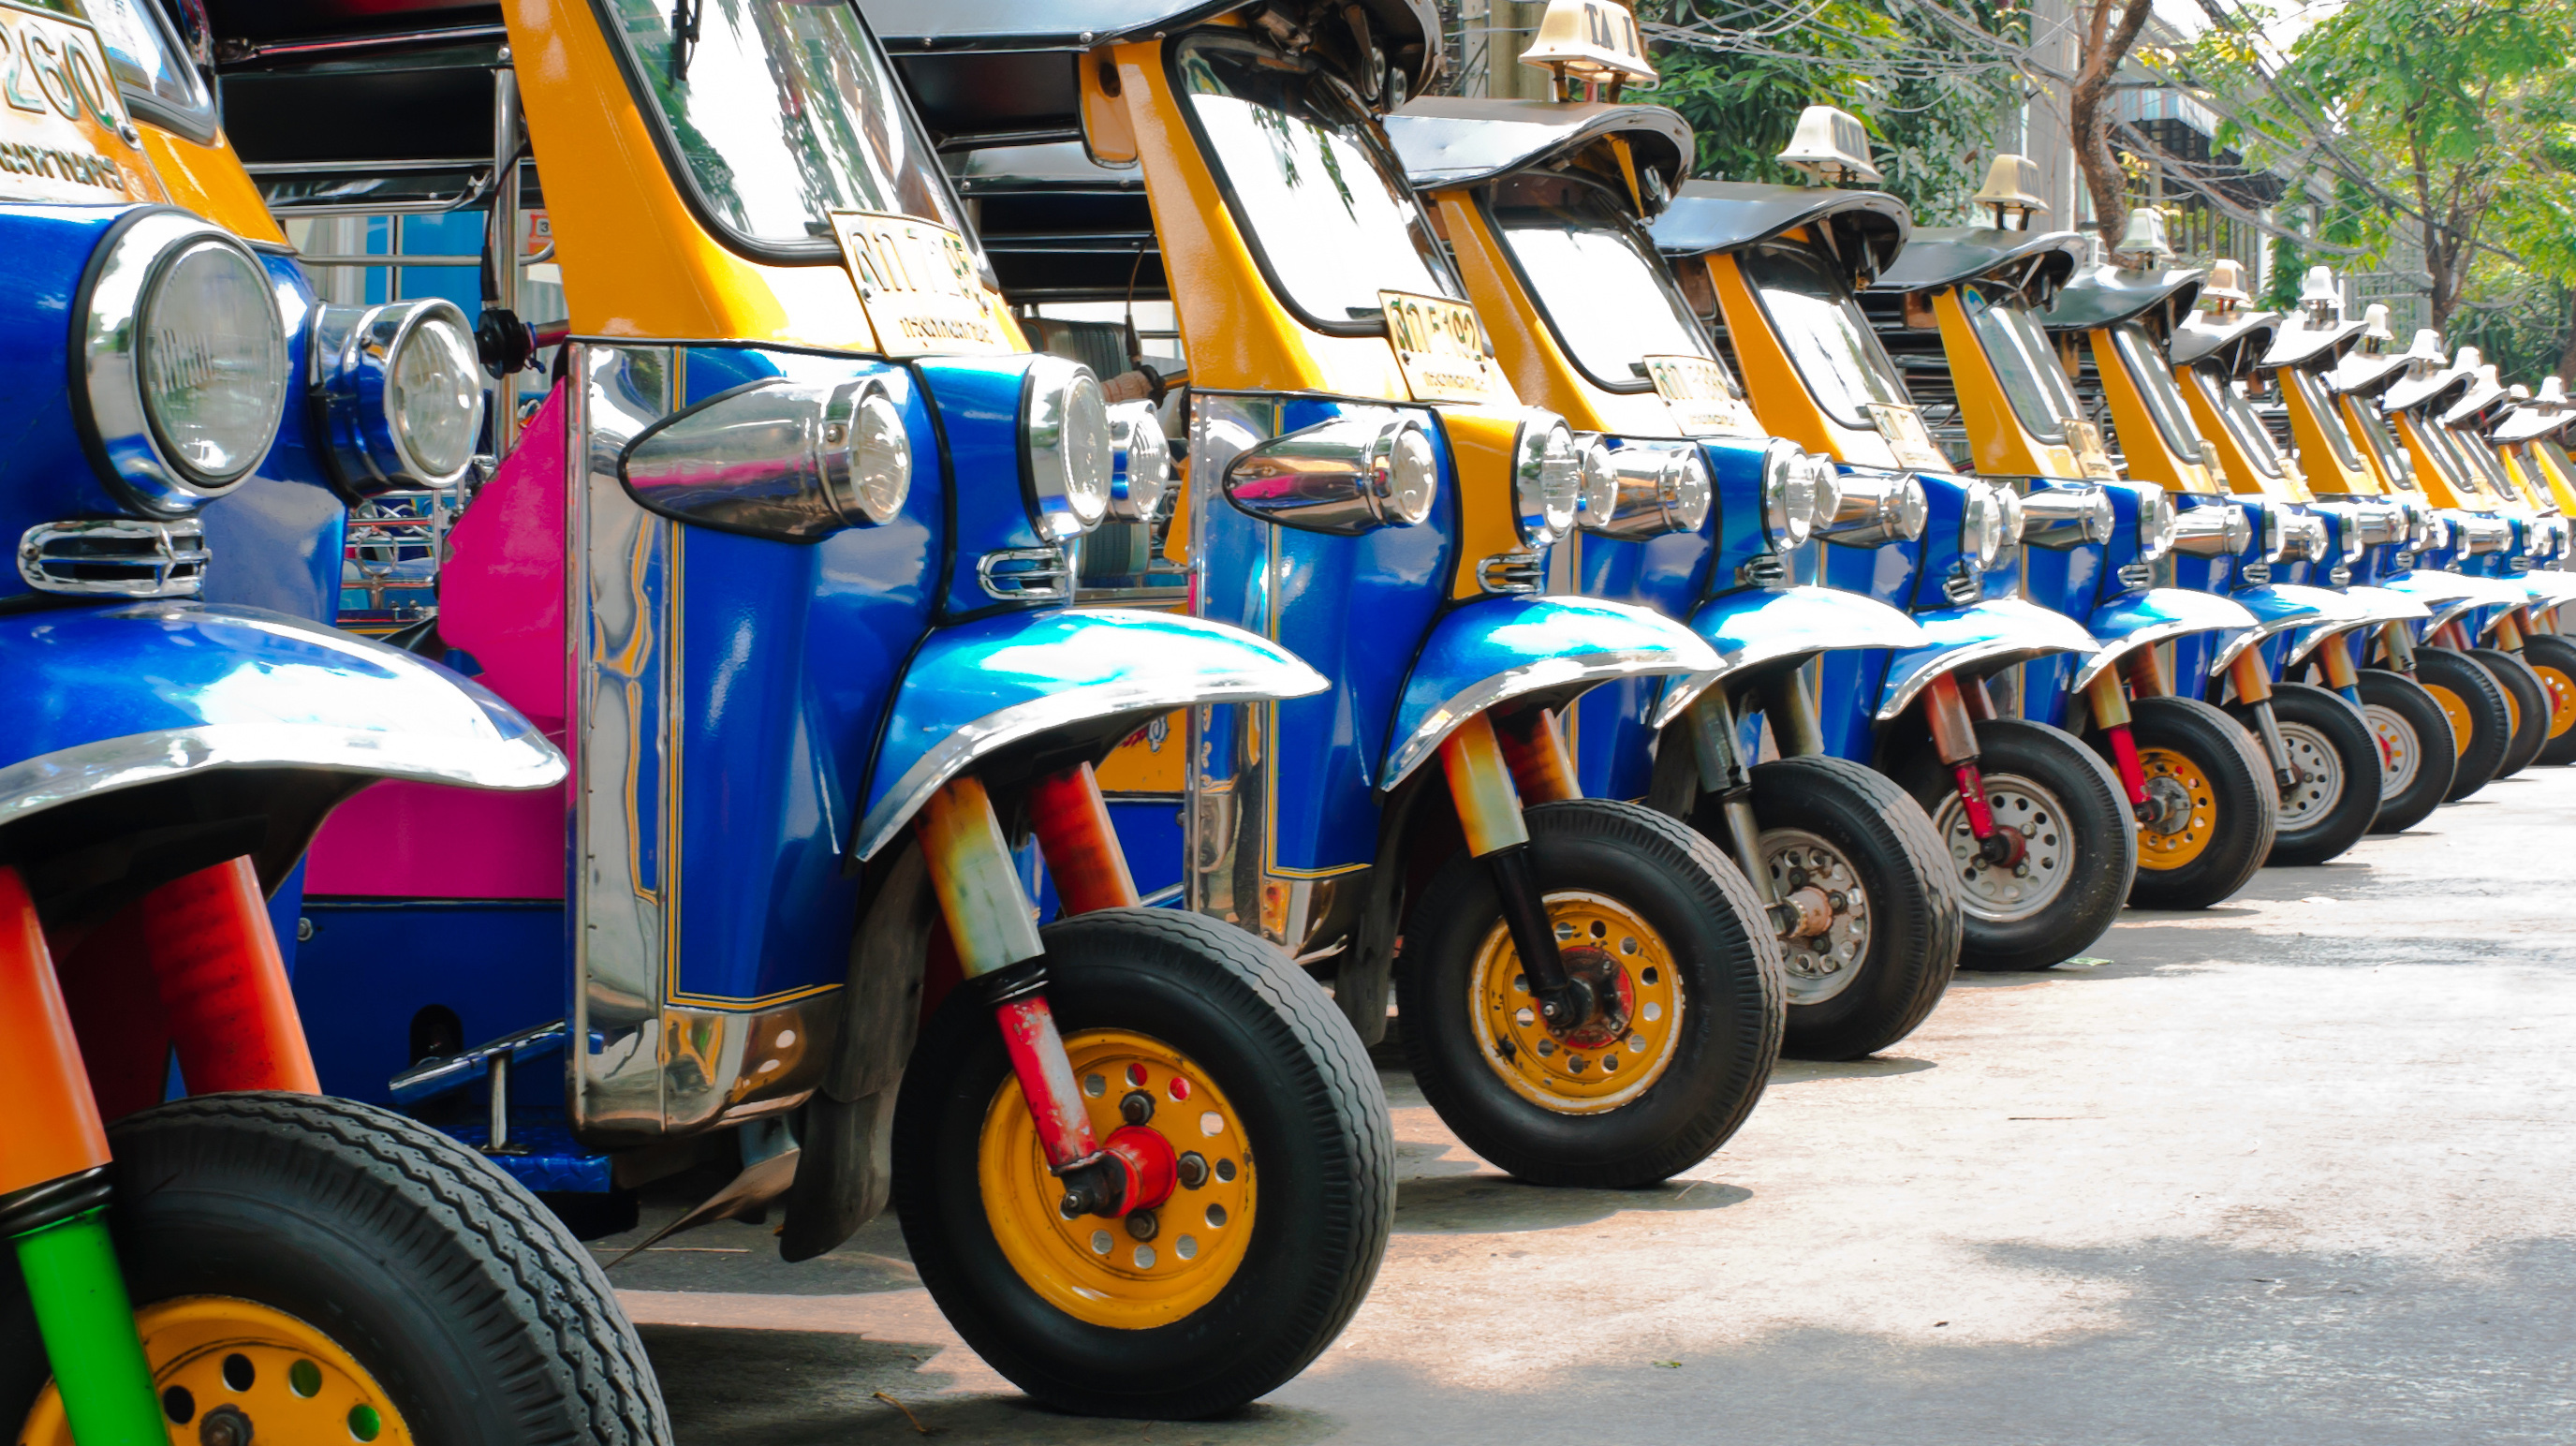 Tuk tuks taxi lined up in Bangkok, Thailand